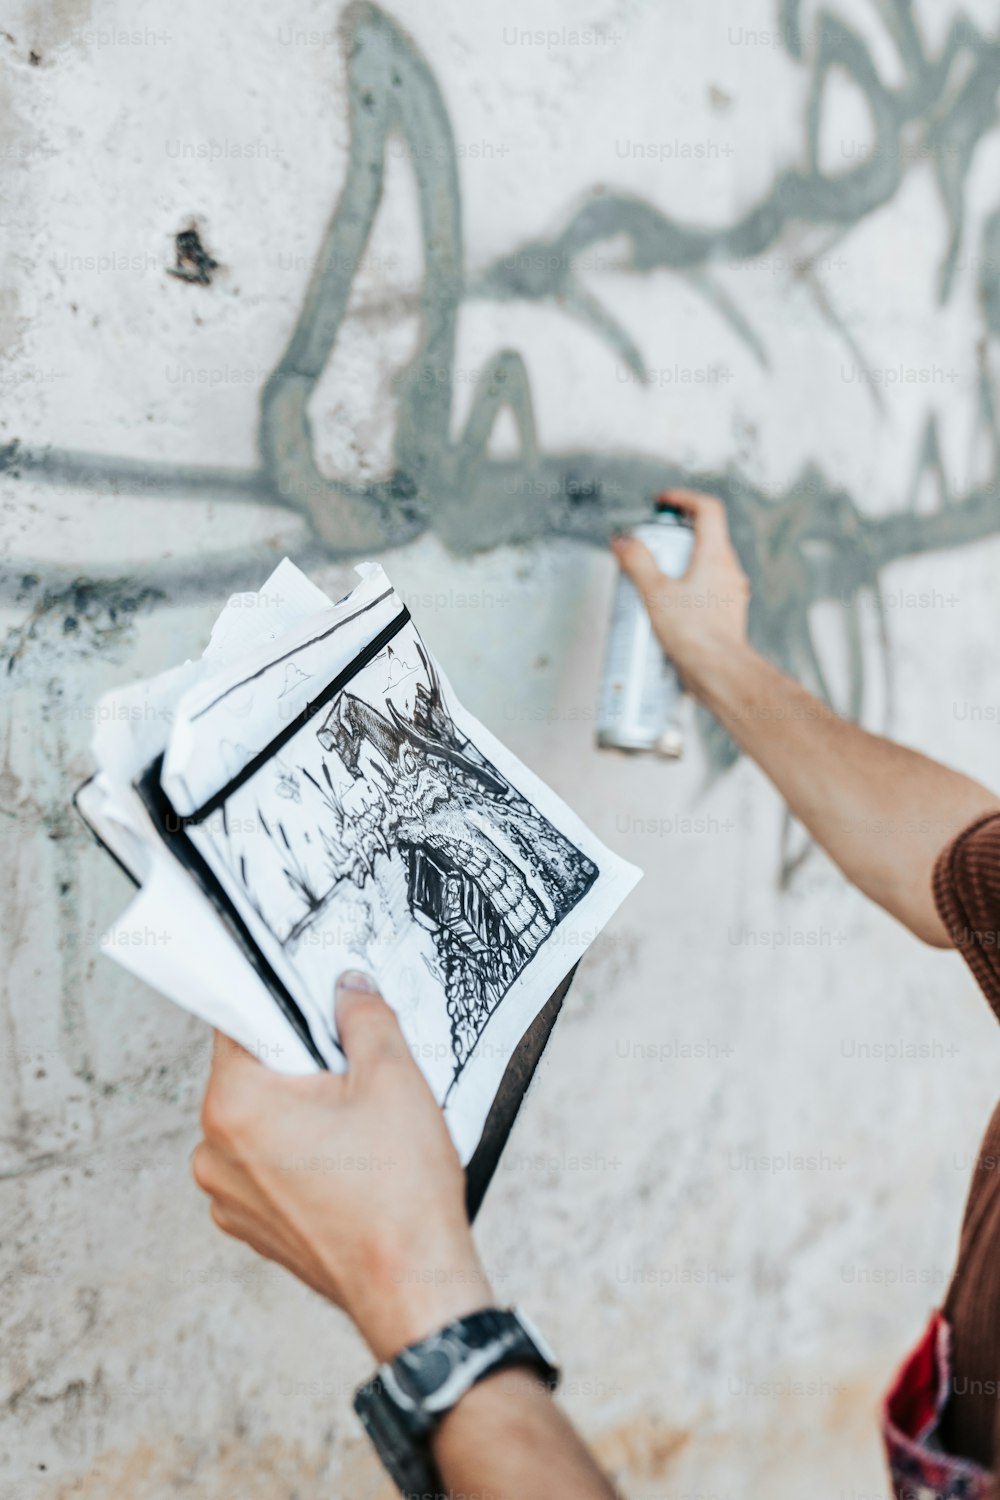 Ein Mann bemalt eine Wand mit Graffiti